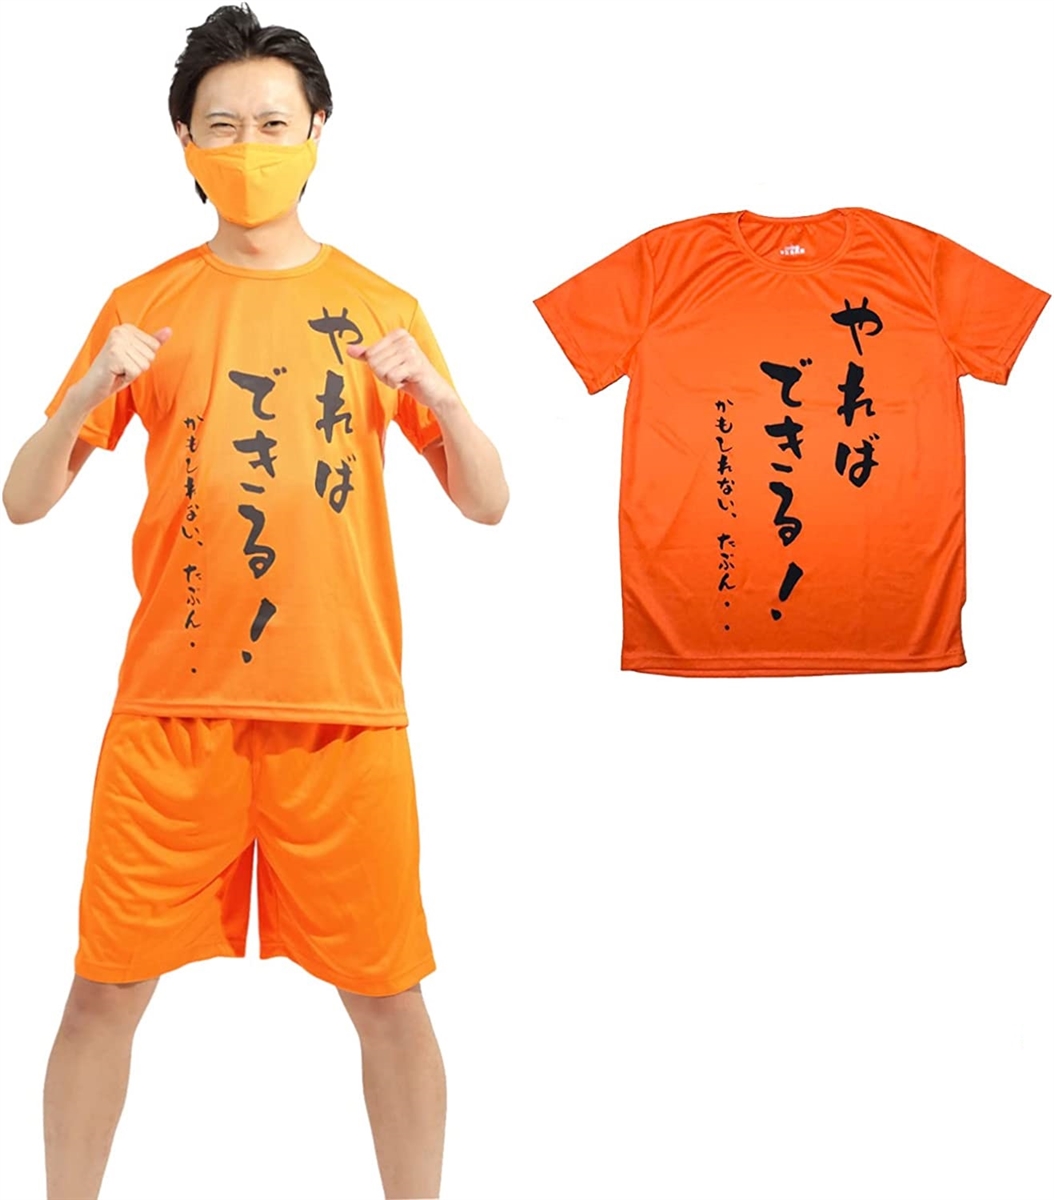 おもしろtシャツ 文字 コスプレ オレンジ( オレンジ,  2XL)